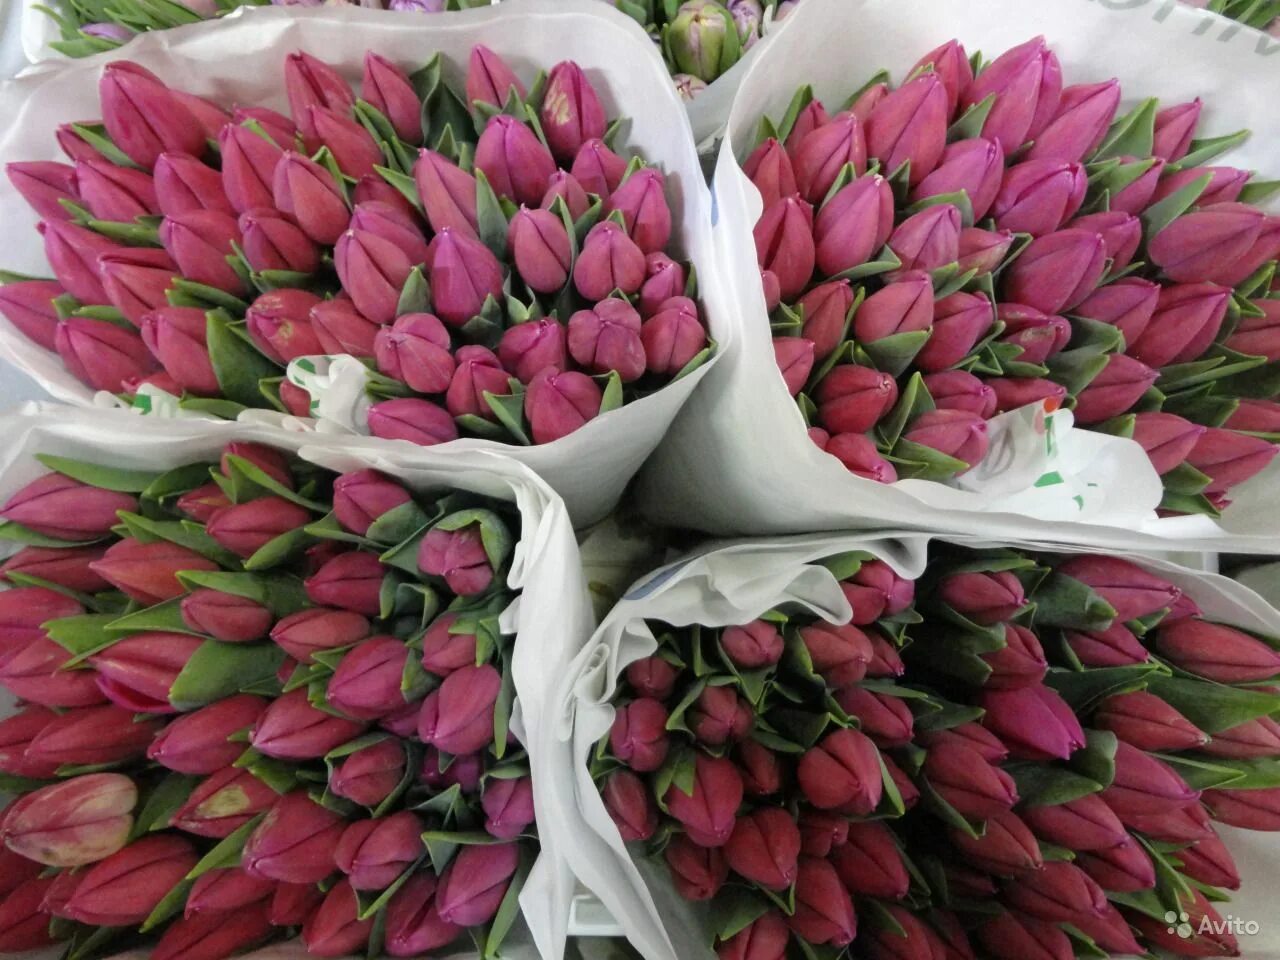 Где можно купить тюльпаны дешевые. Тюльпаны в пачках. Тюльпаны опт. Пачка тюльпанов оптовая. Производитель тюльпанов.